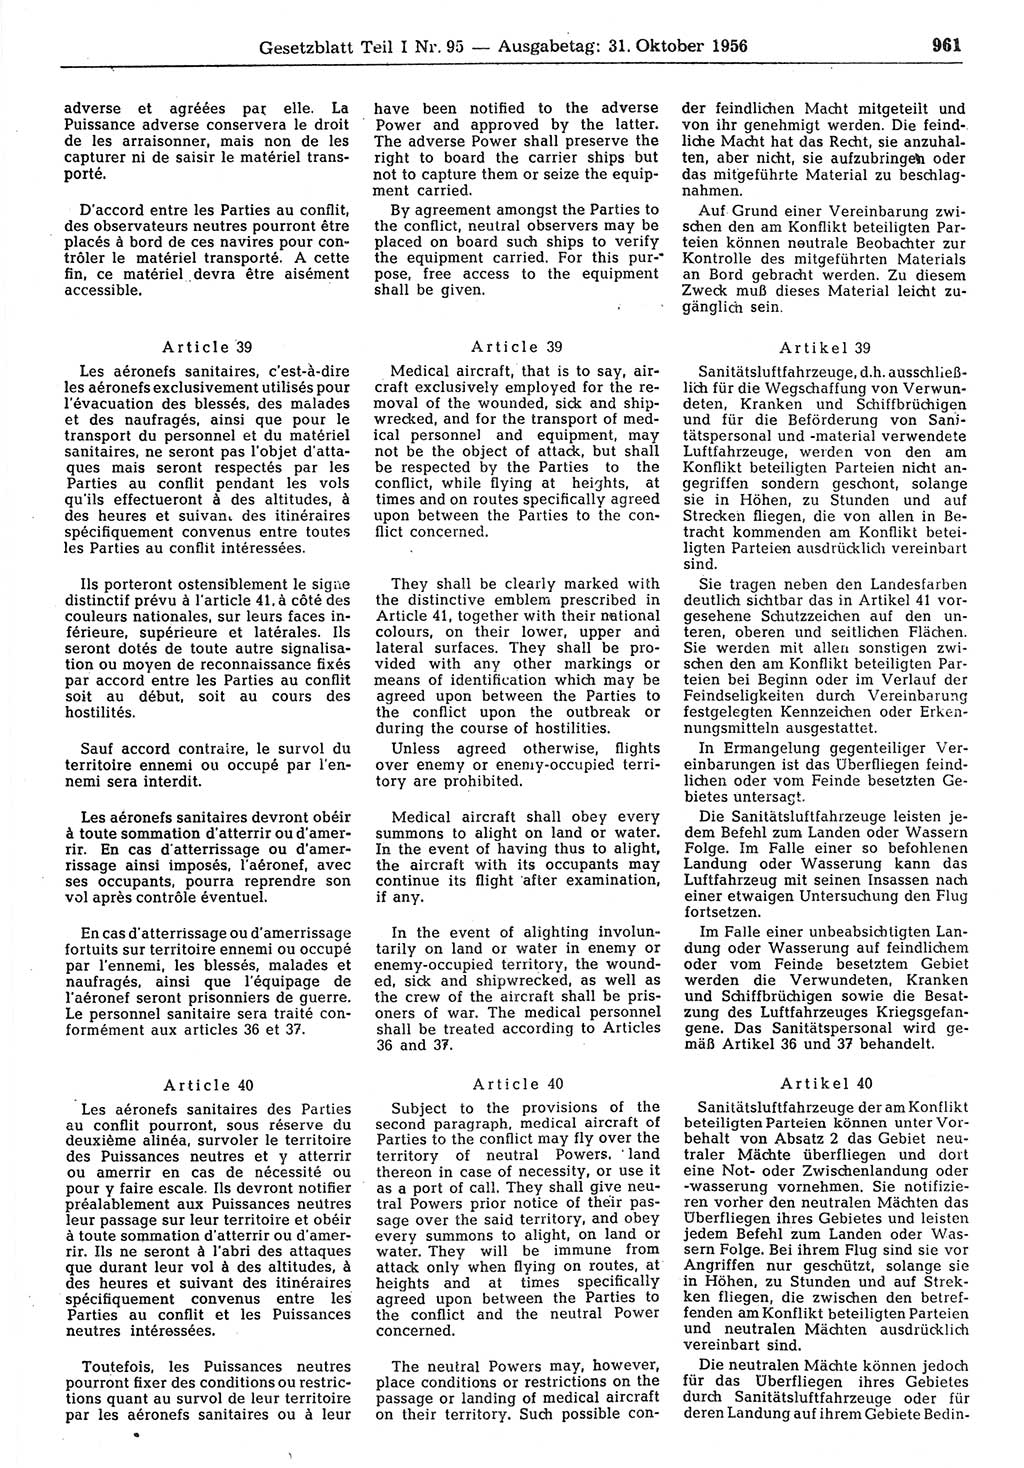 Gesetzblatt (GBl.) der Deutschen Demokratischen Republik (DDR) Teil Ⅰ 1956, Seite 961 (GBl. DDR Ⅰ 1956, S. 961)